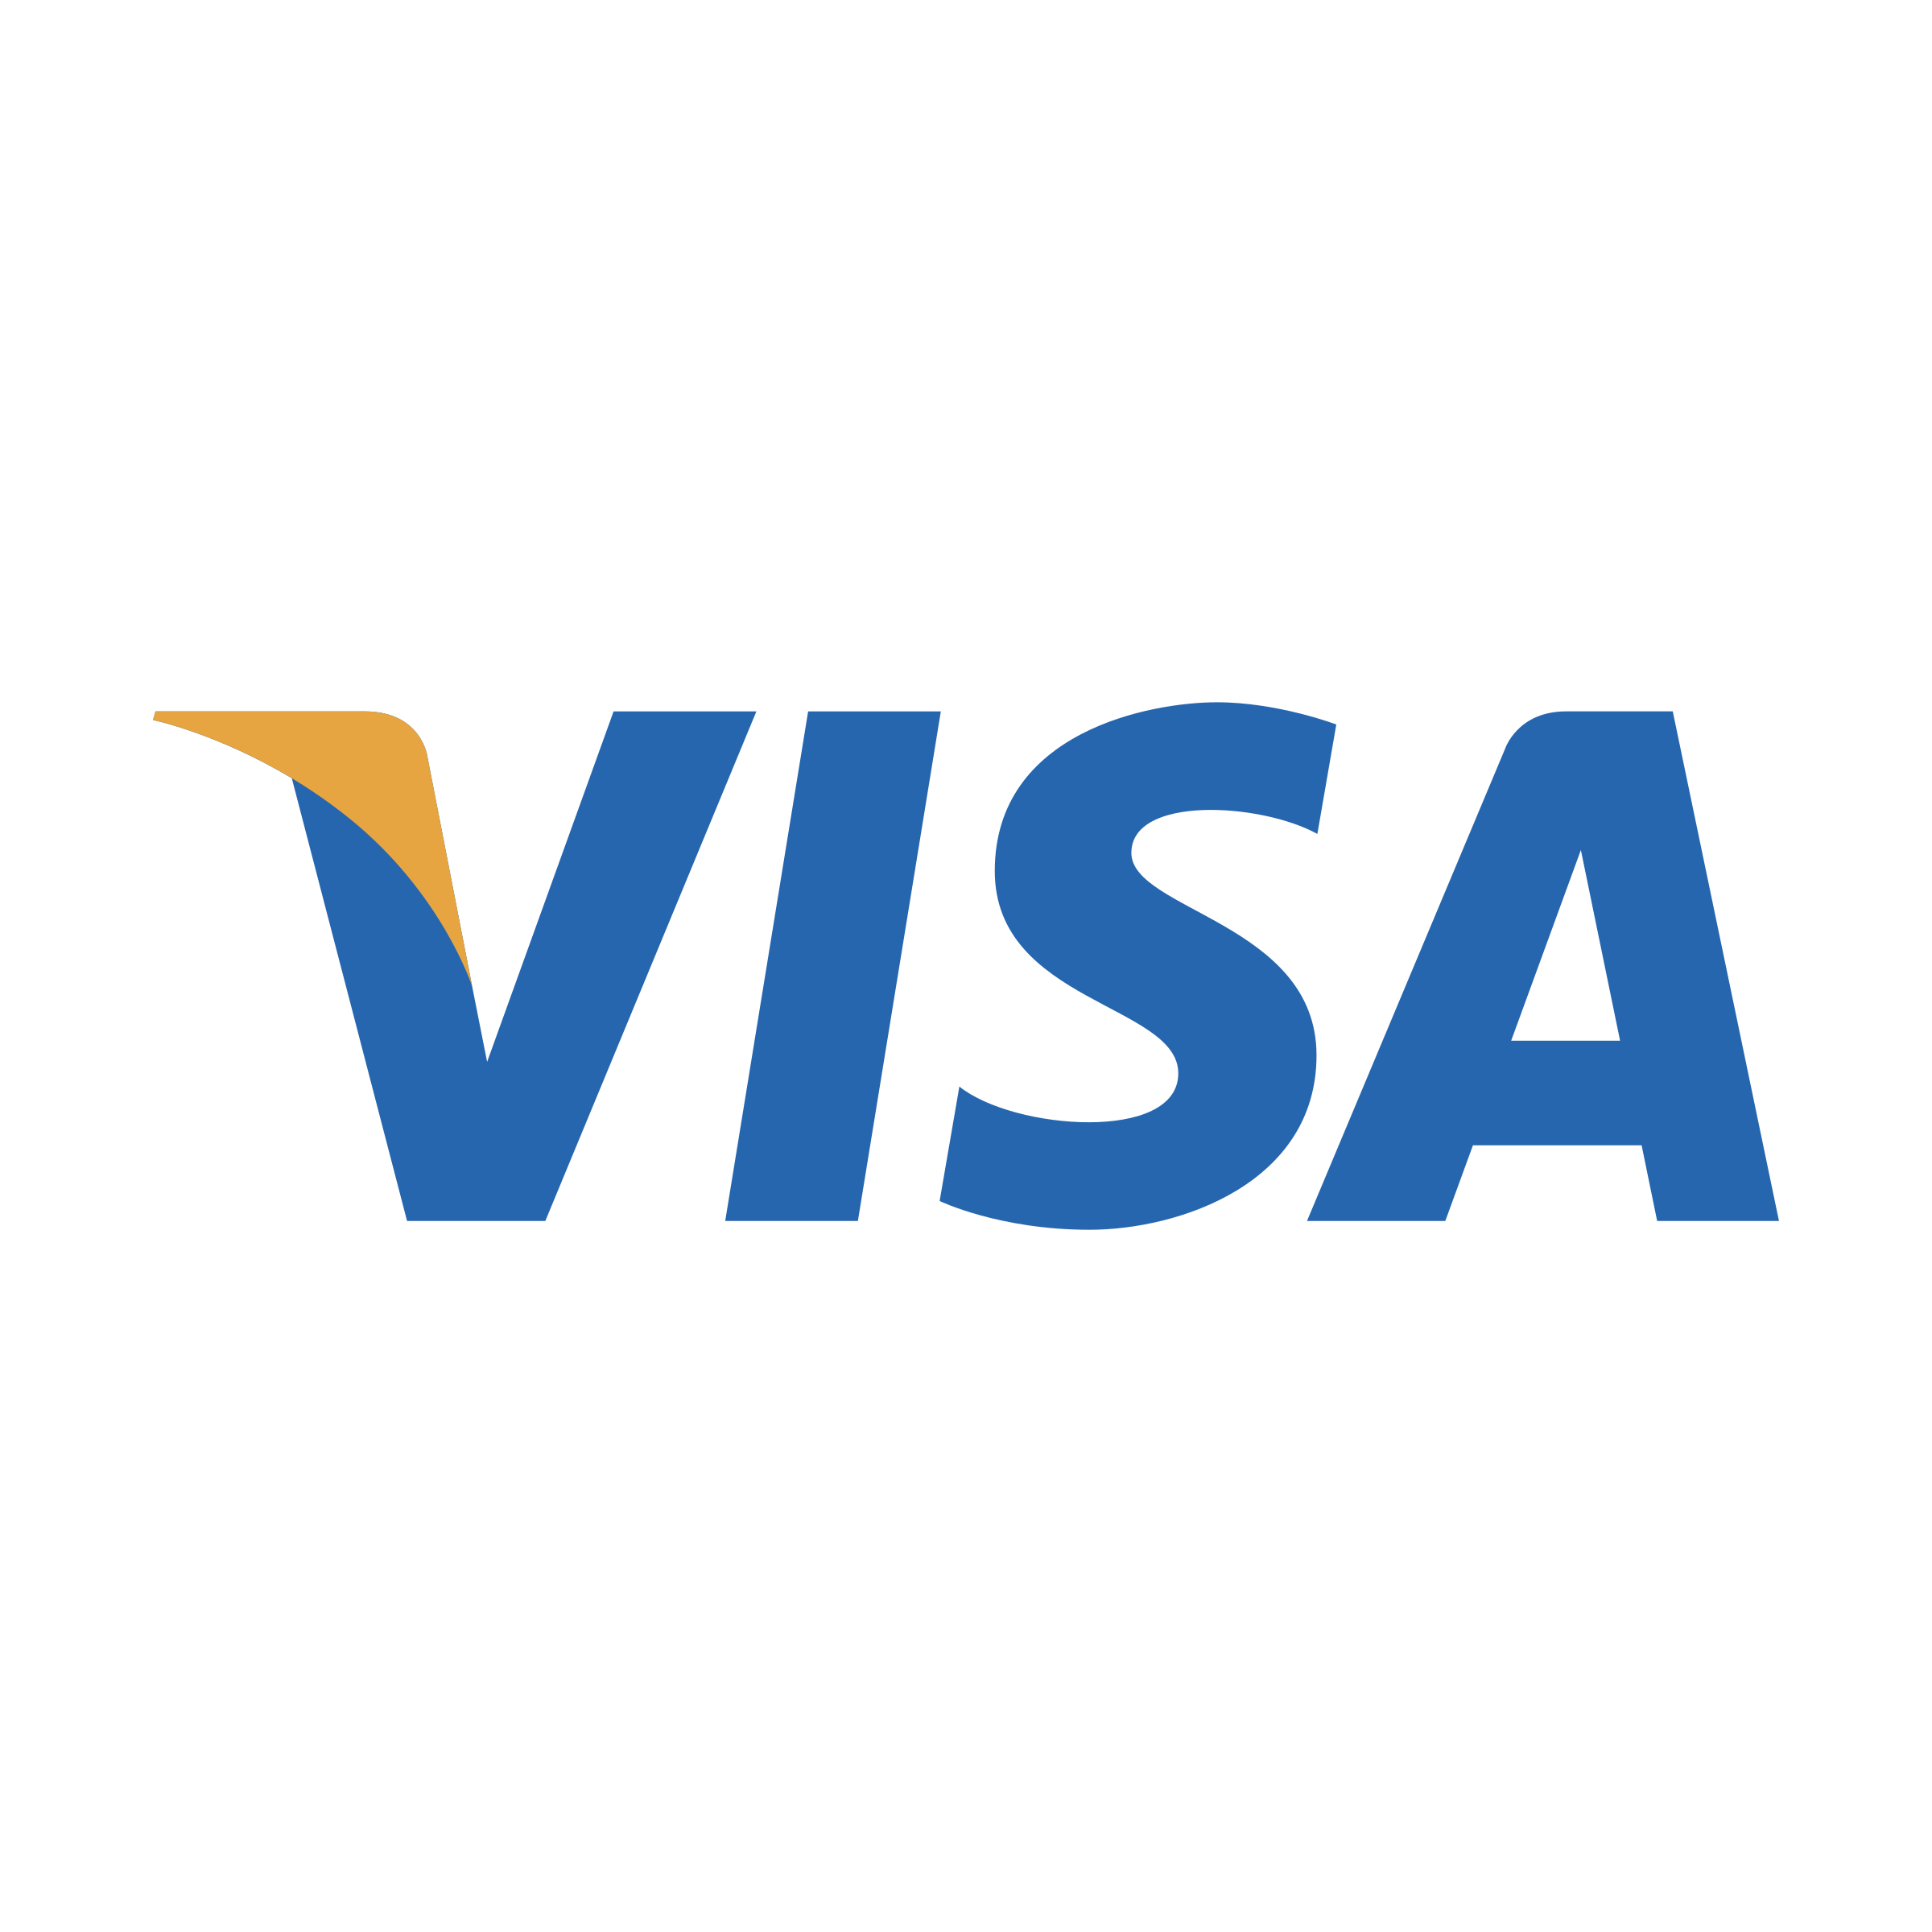 Tarjeta de visa logo PNG Fondo de imágenes prediseñadas HD